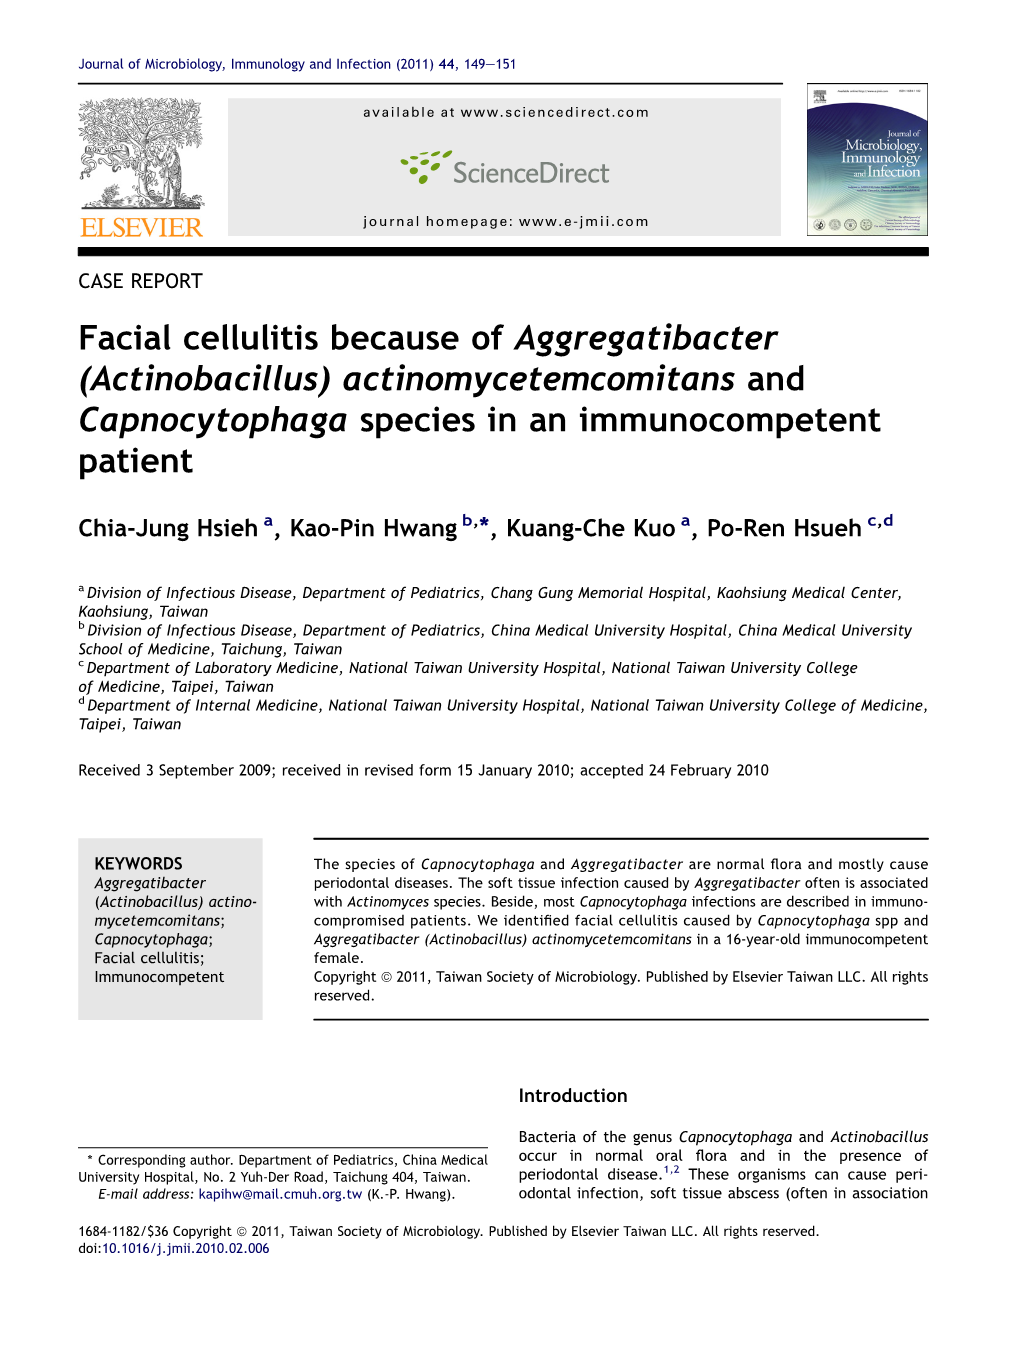 (Actinobacillus) Actinomycetemcomitans and Capnocytophaga Species in an Immunocompetent Patient